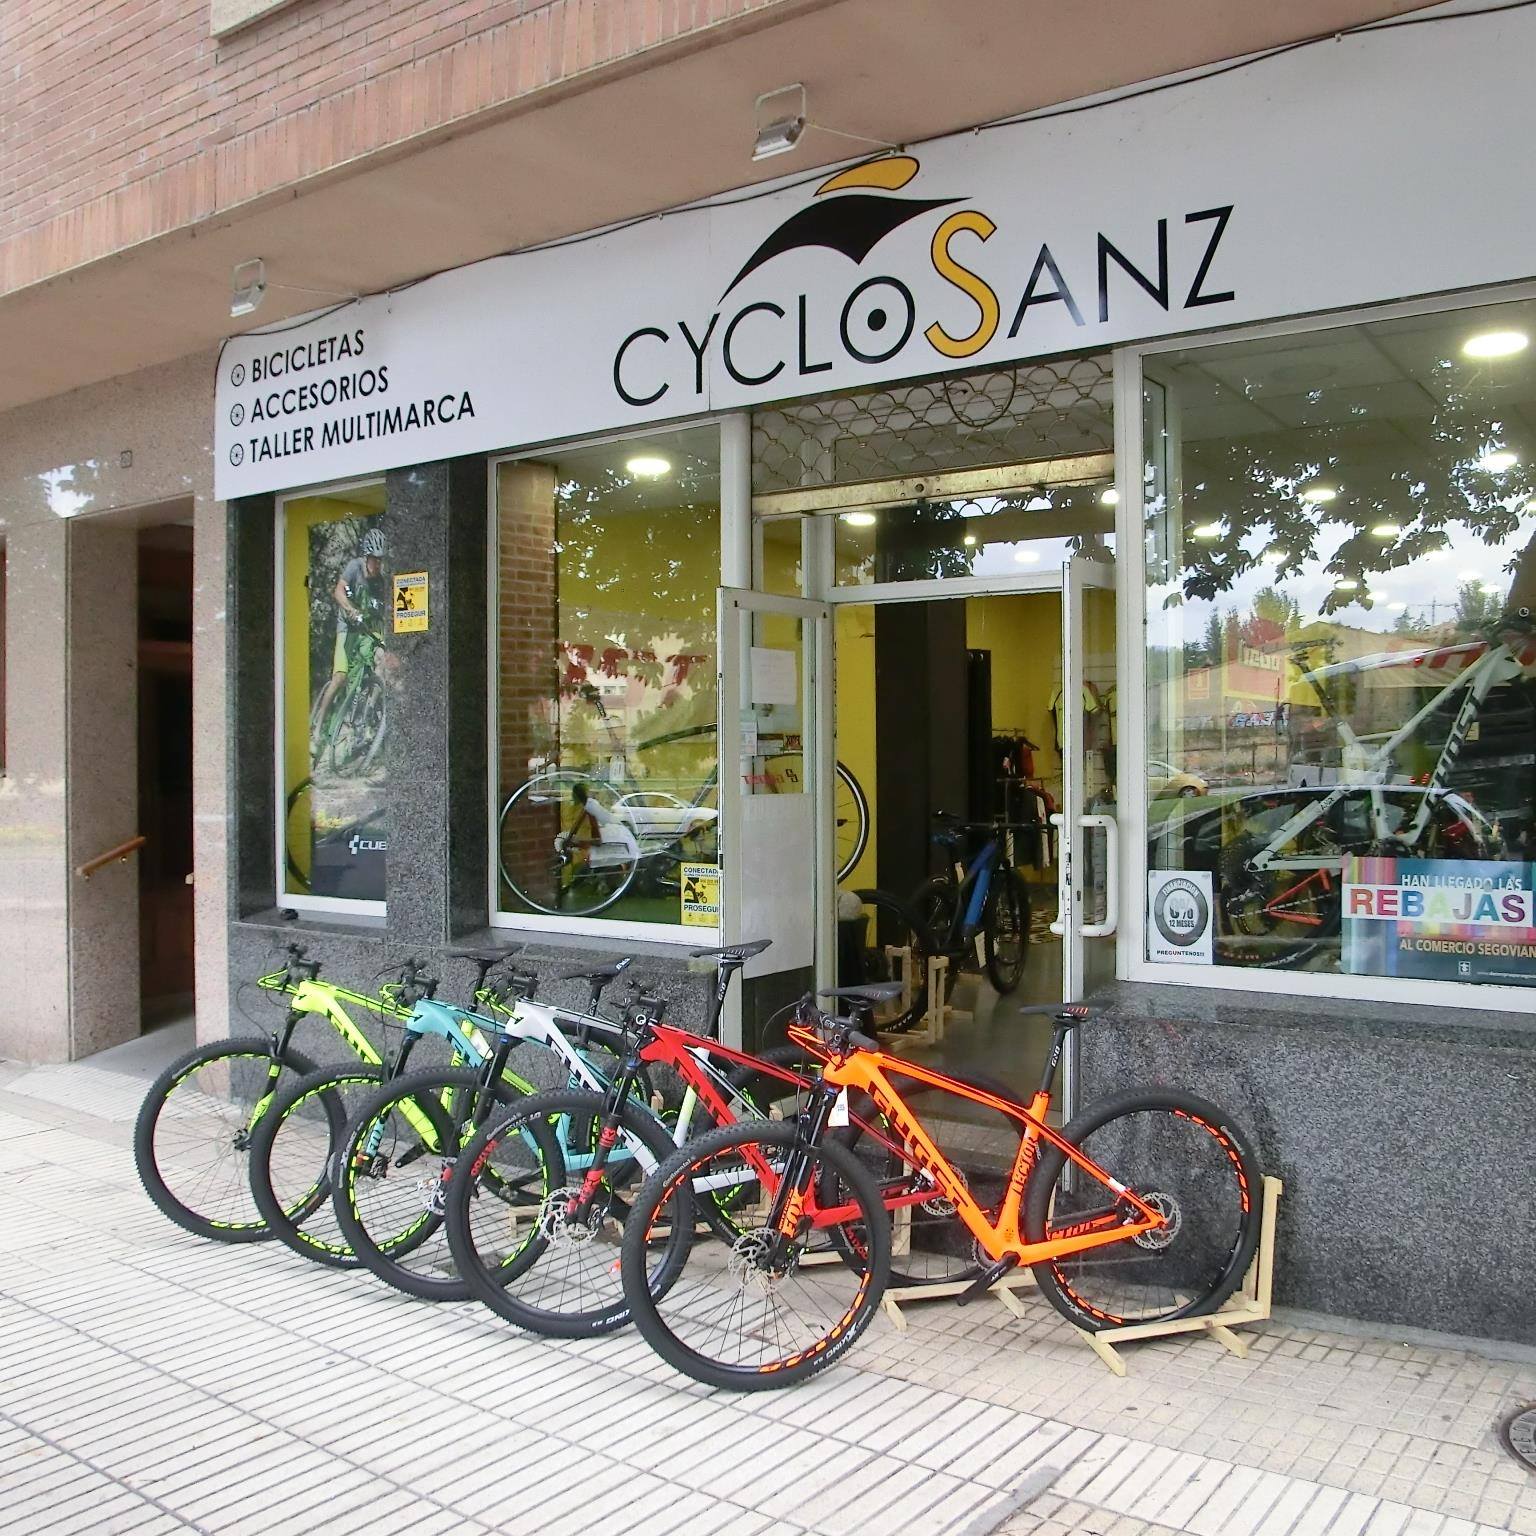 Cyclo Sanz